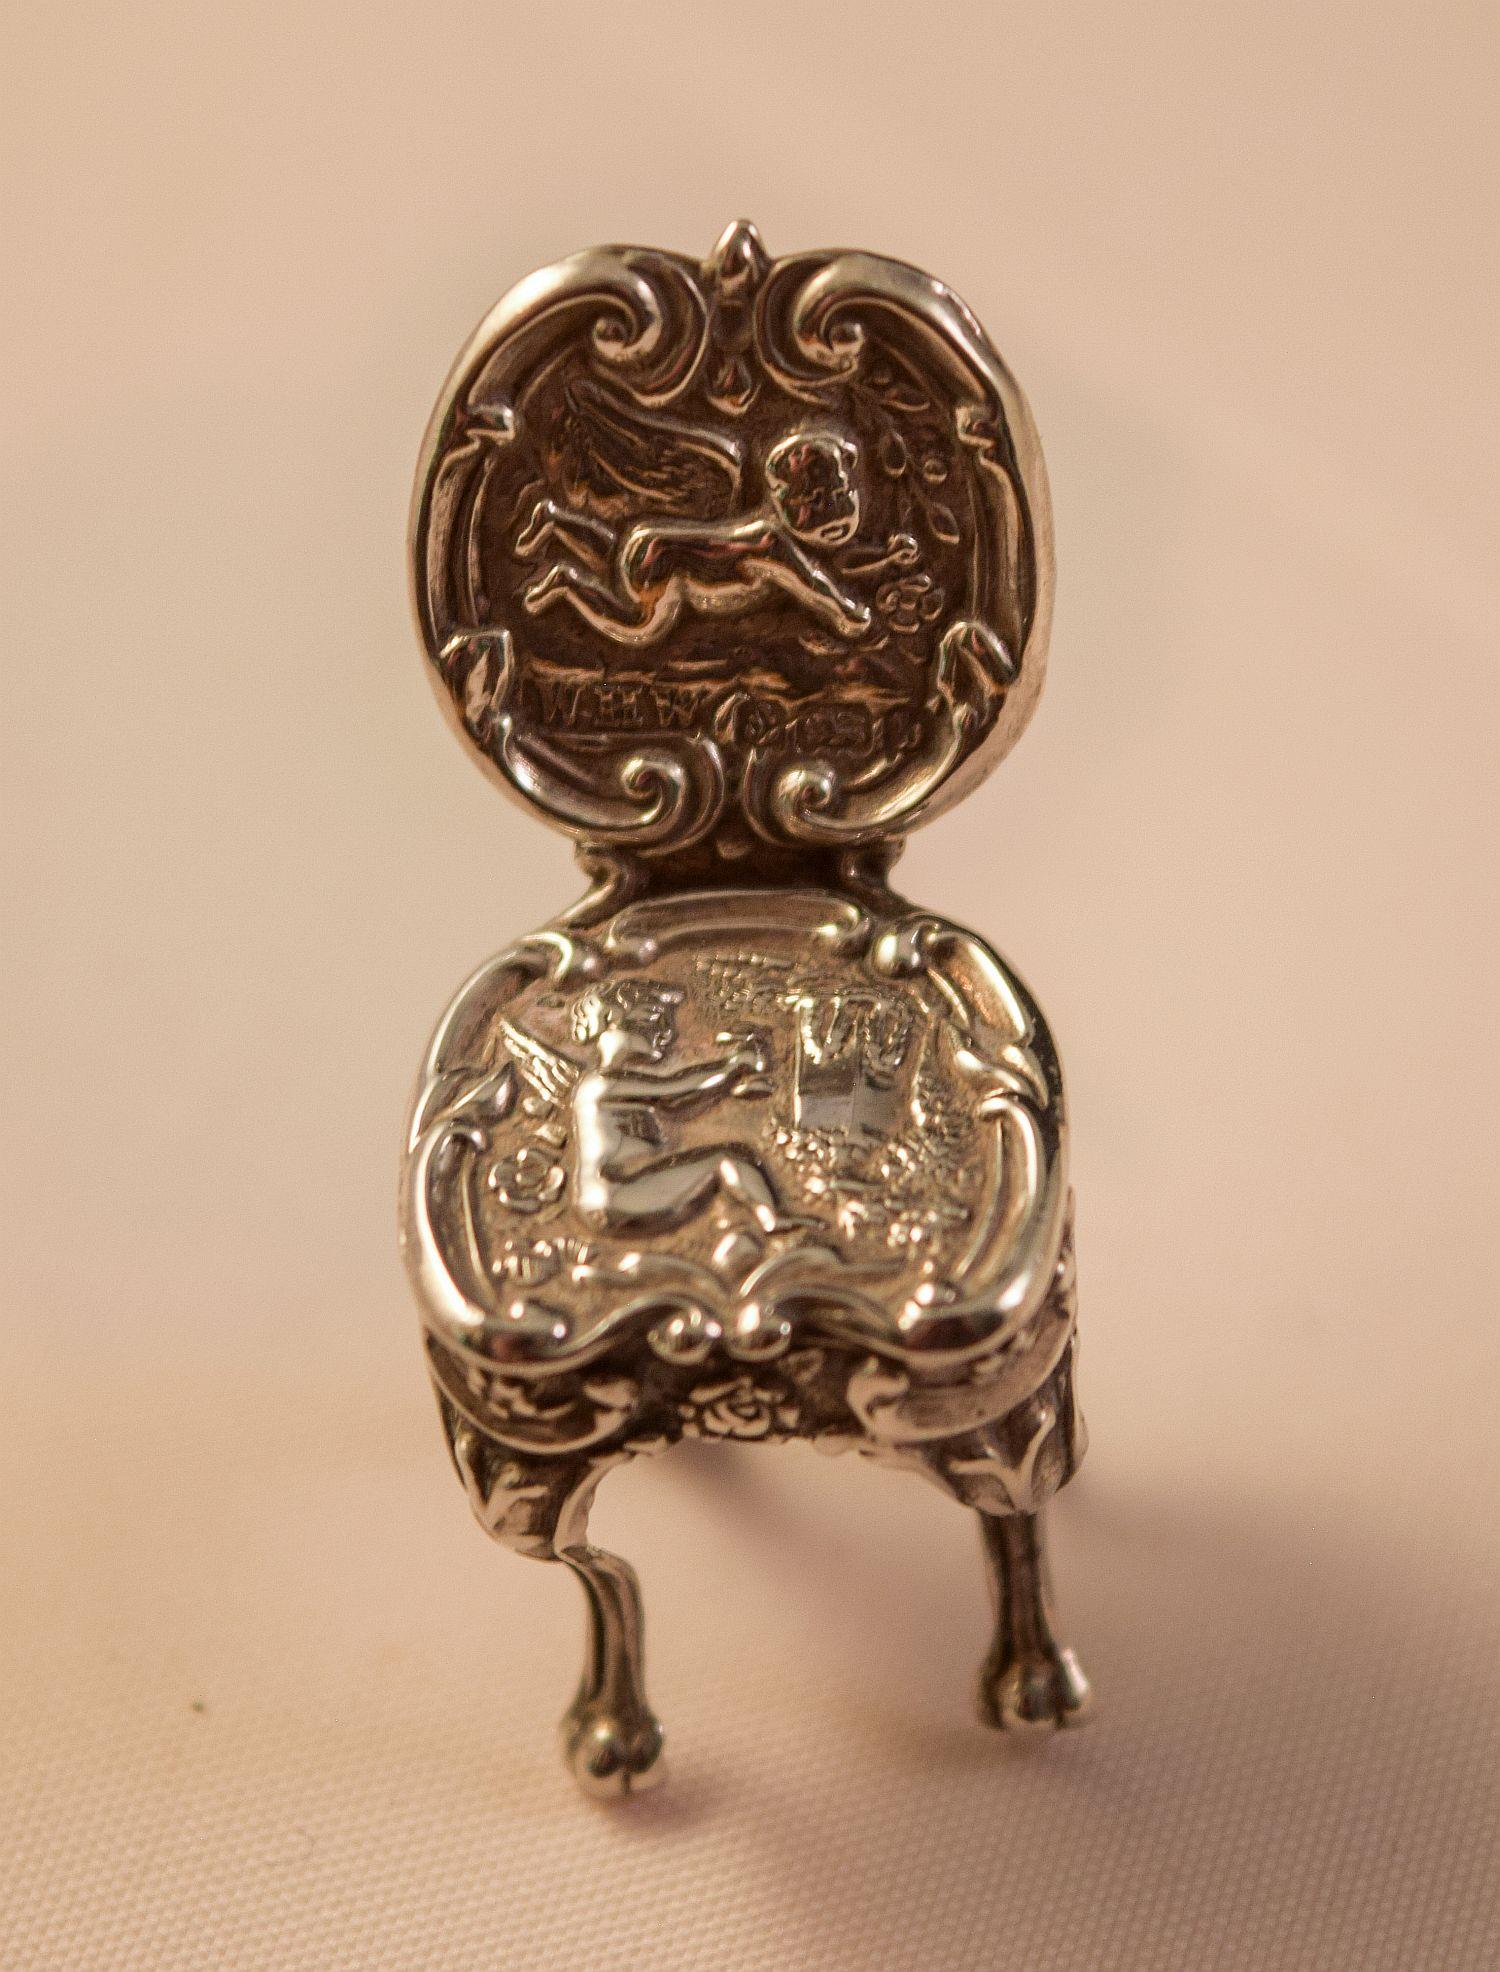 Eine Edwardianische Silber Novelty Miniatur  Stuhl im Queen Anne-Stil.
Englischer Saal markiert Birmingham 1901
Dieser Miniatursessel mit hohem Sammlerwert ist in ausgezeichnetem Zustand.
Größe 4,1 cm hoch
Ausgezeichneter Zustand.
Kostenloser Versand